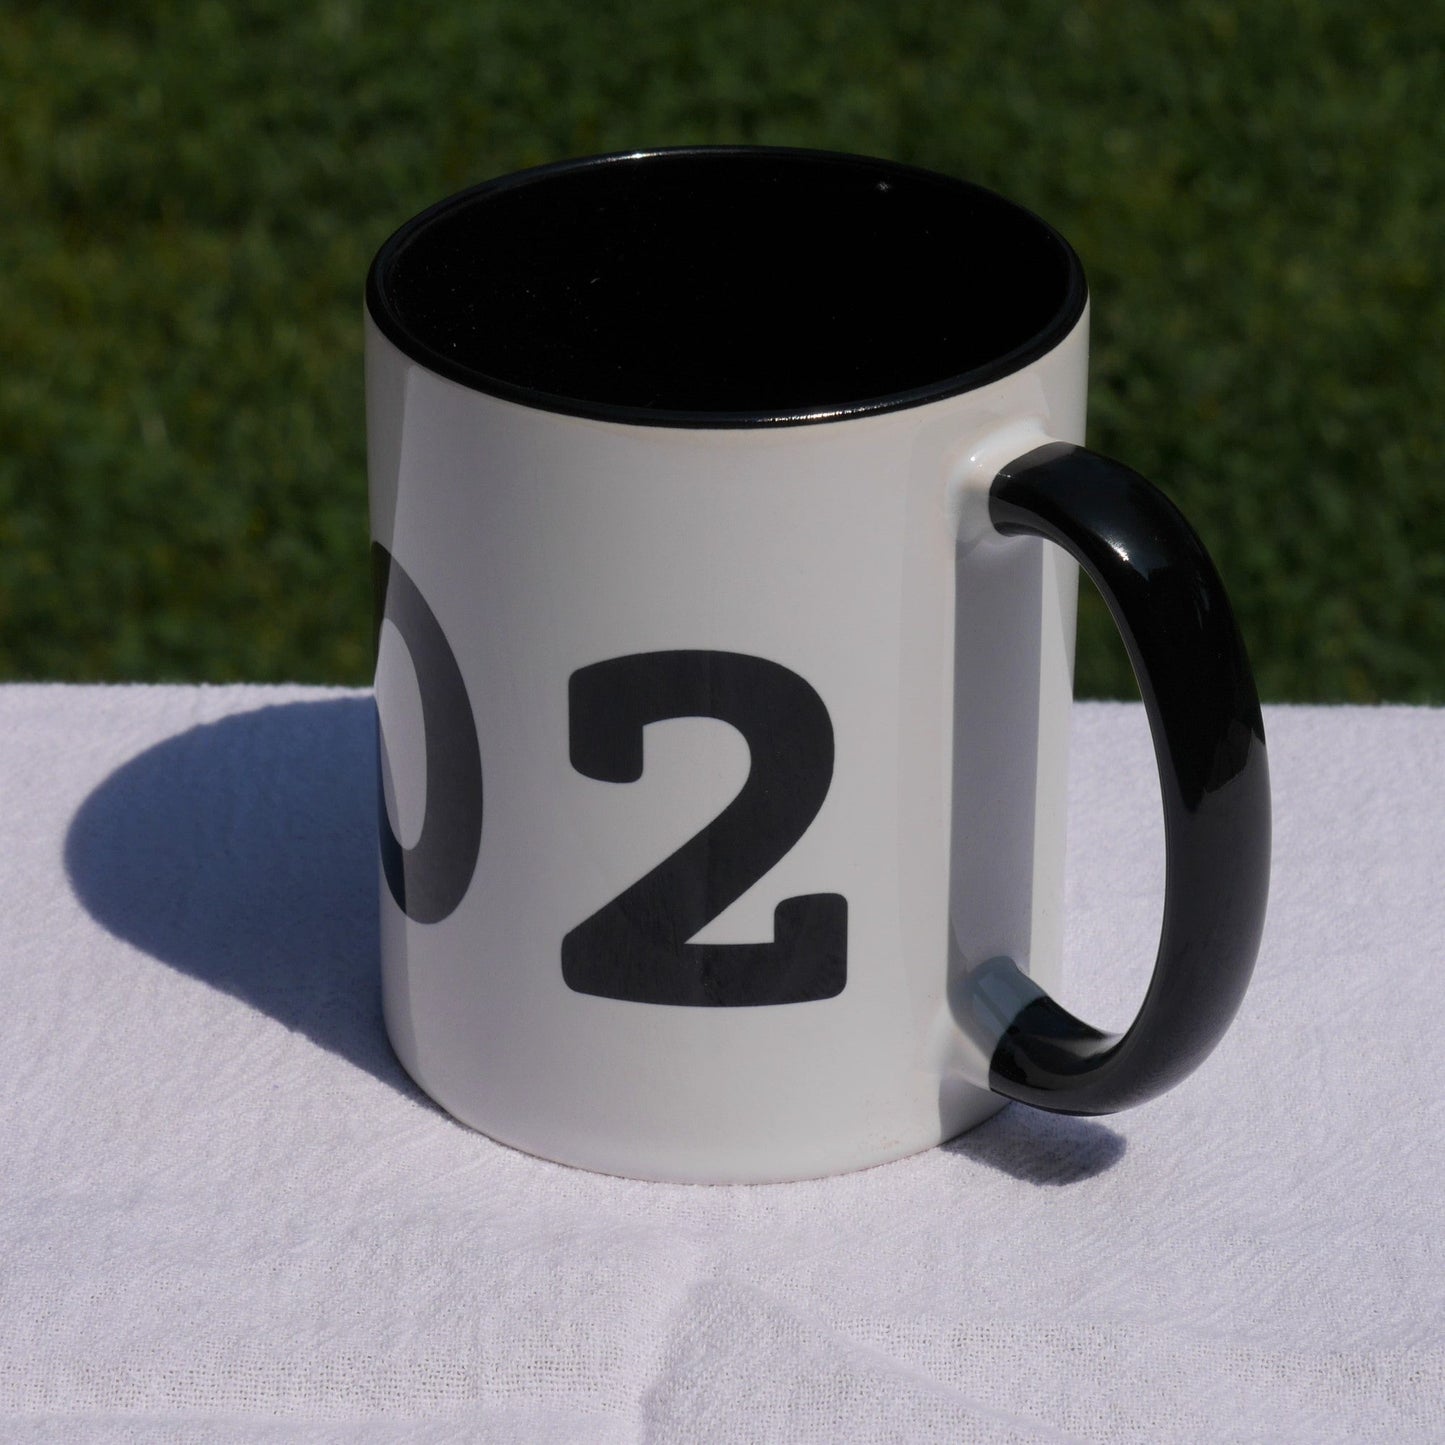 Aviation-Theme Coffee Mug - Black • MKC Kansas City • YHM Designs - Image 06